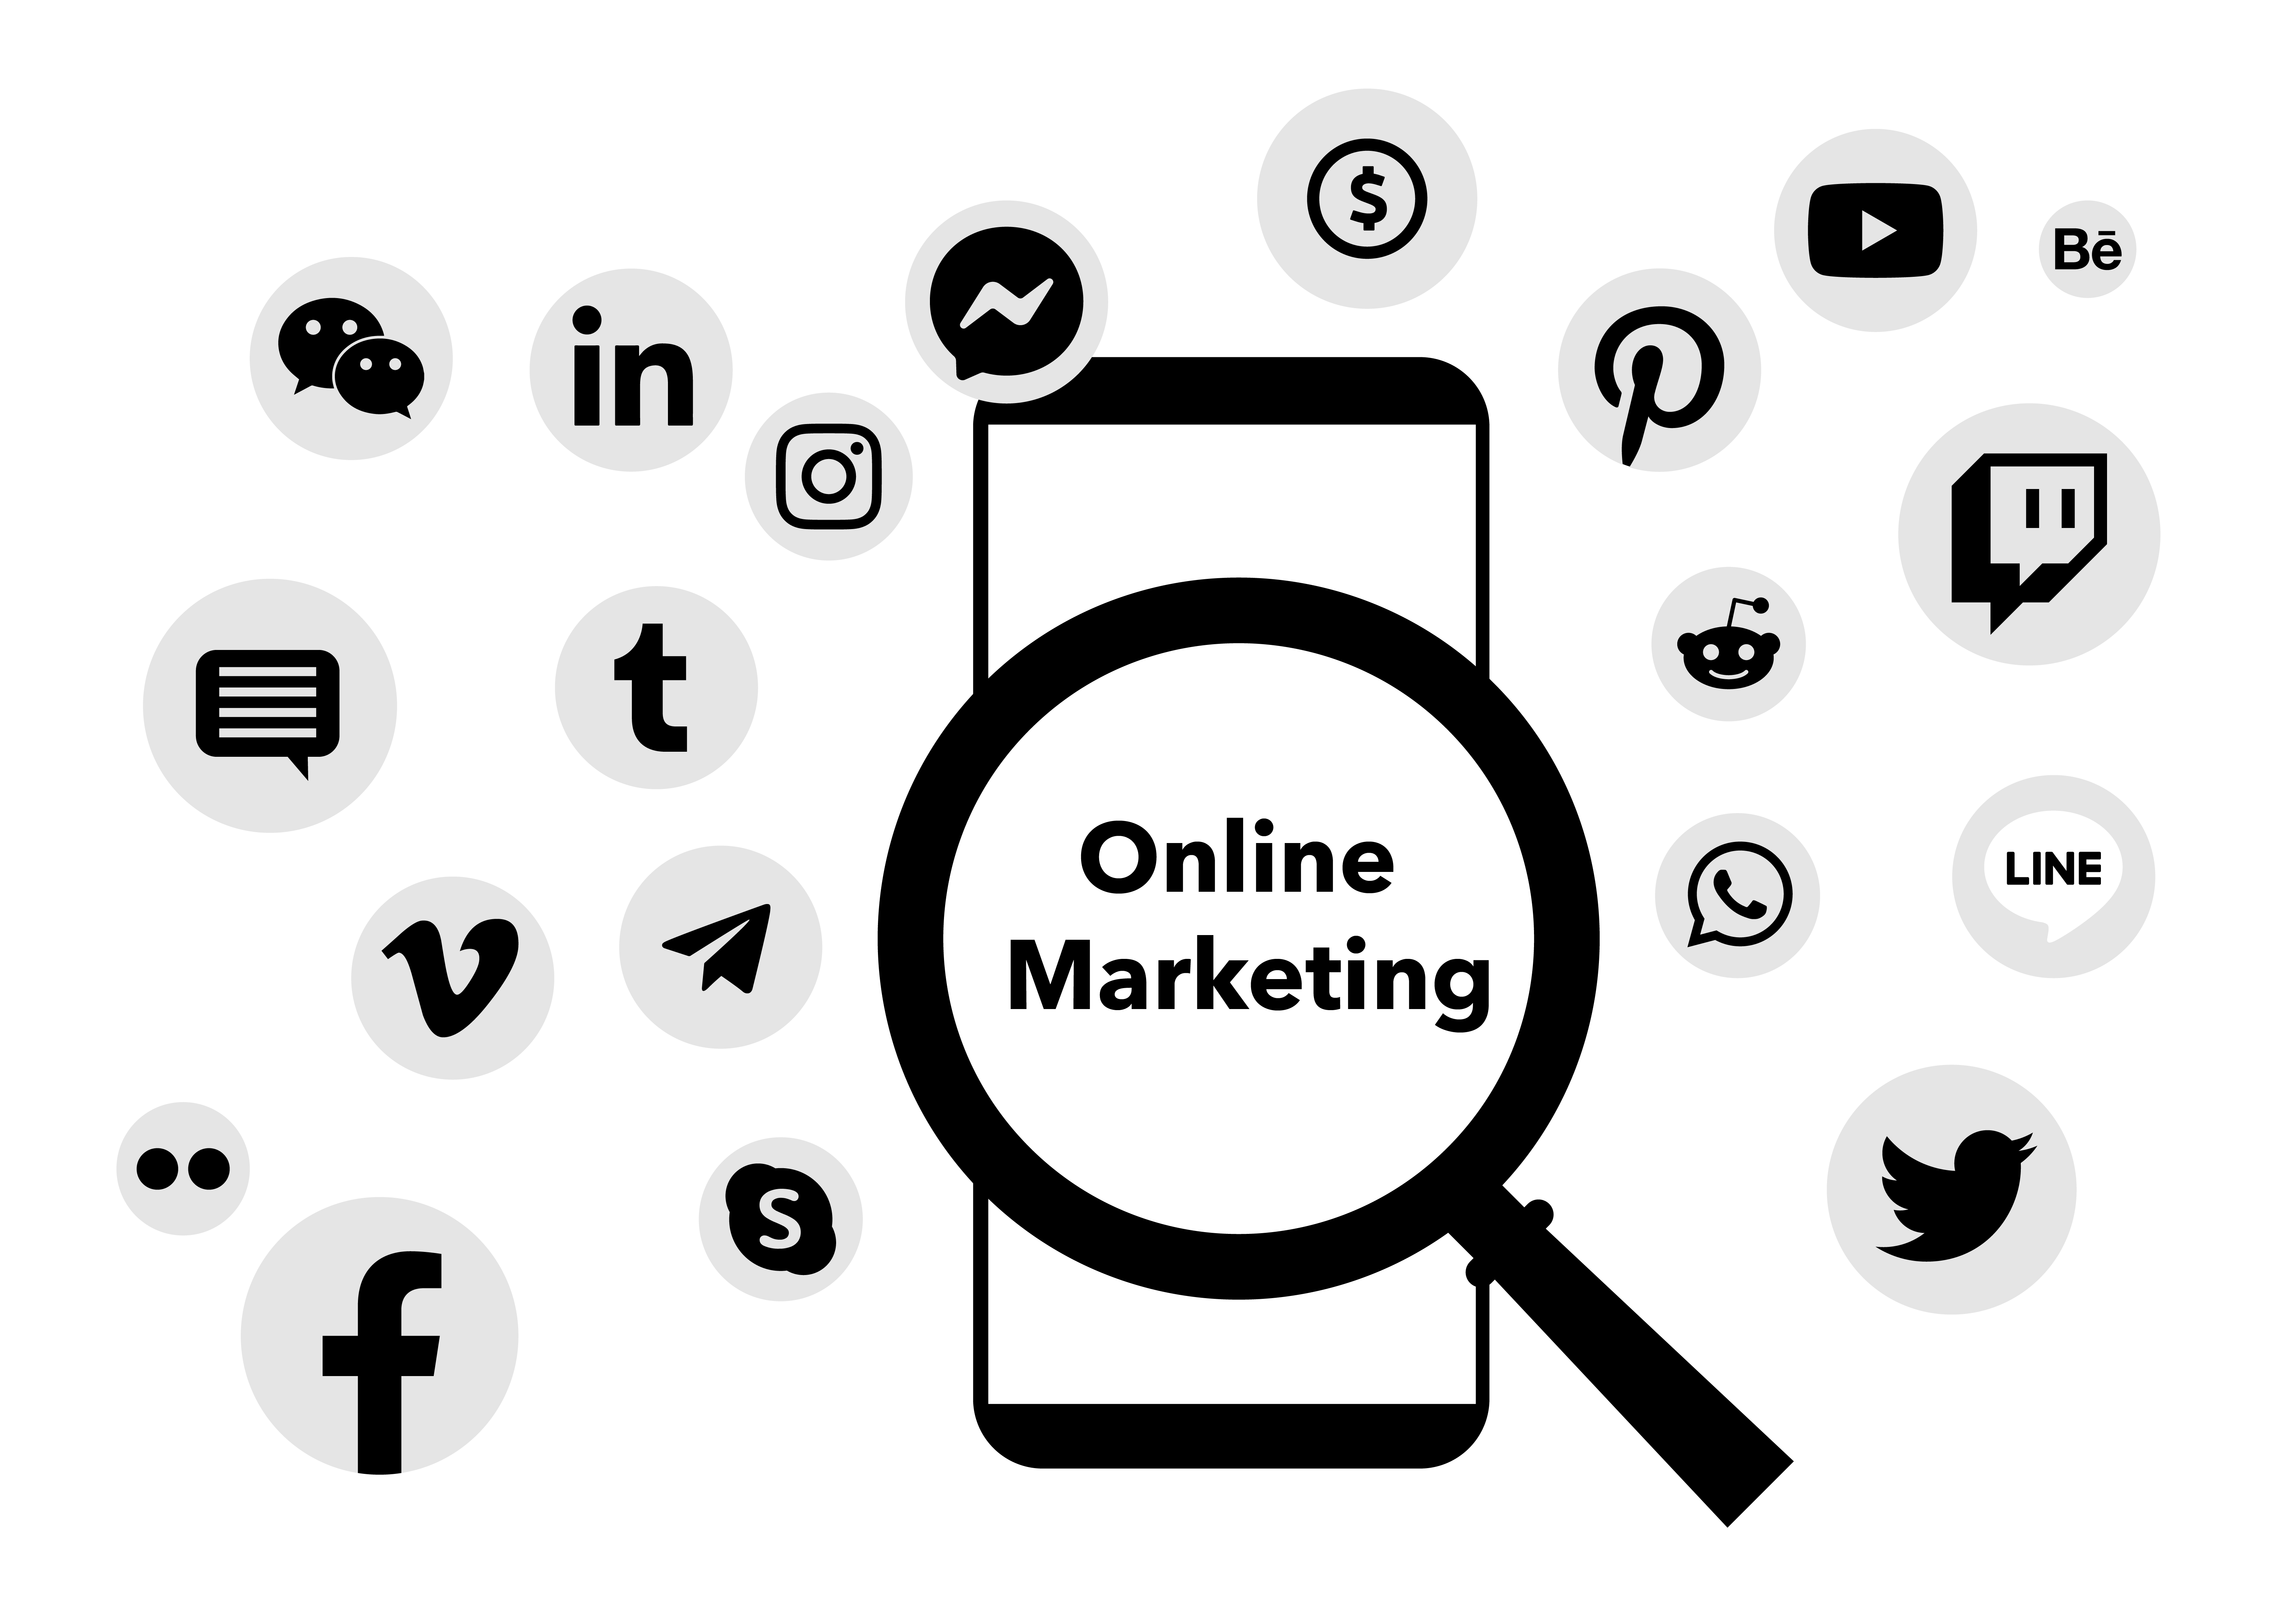 Online Marketing Agentur: Was zum Online Marketing dazu gehört